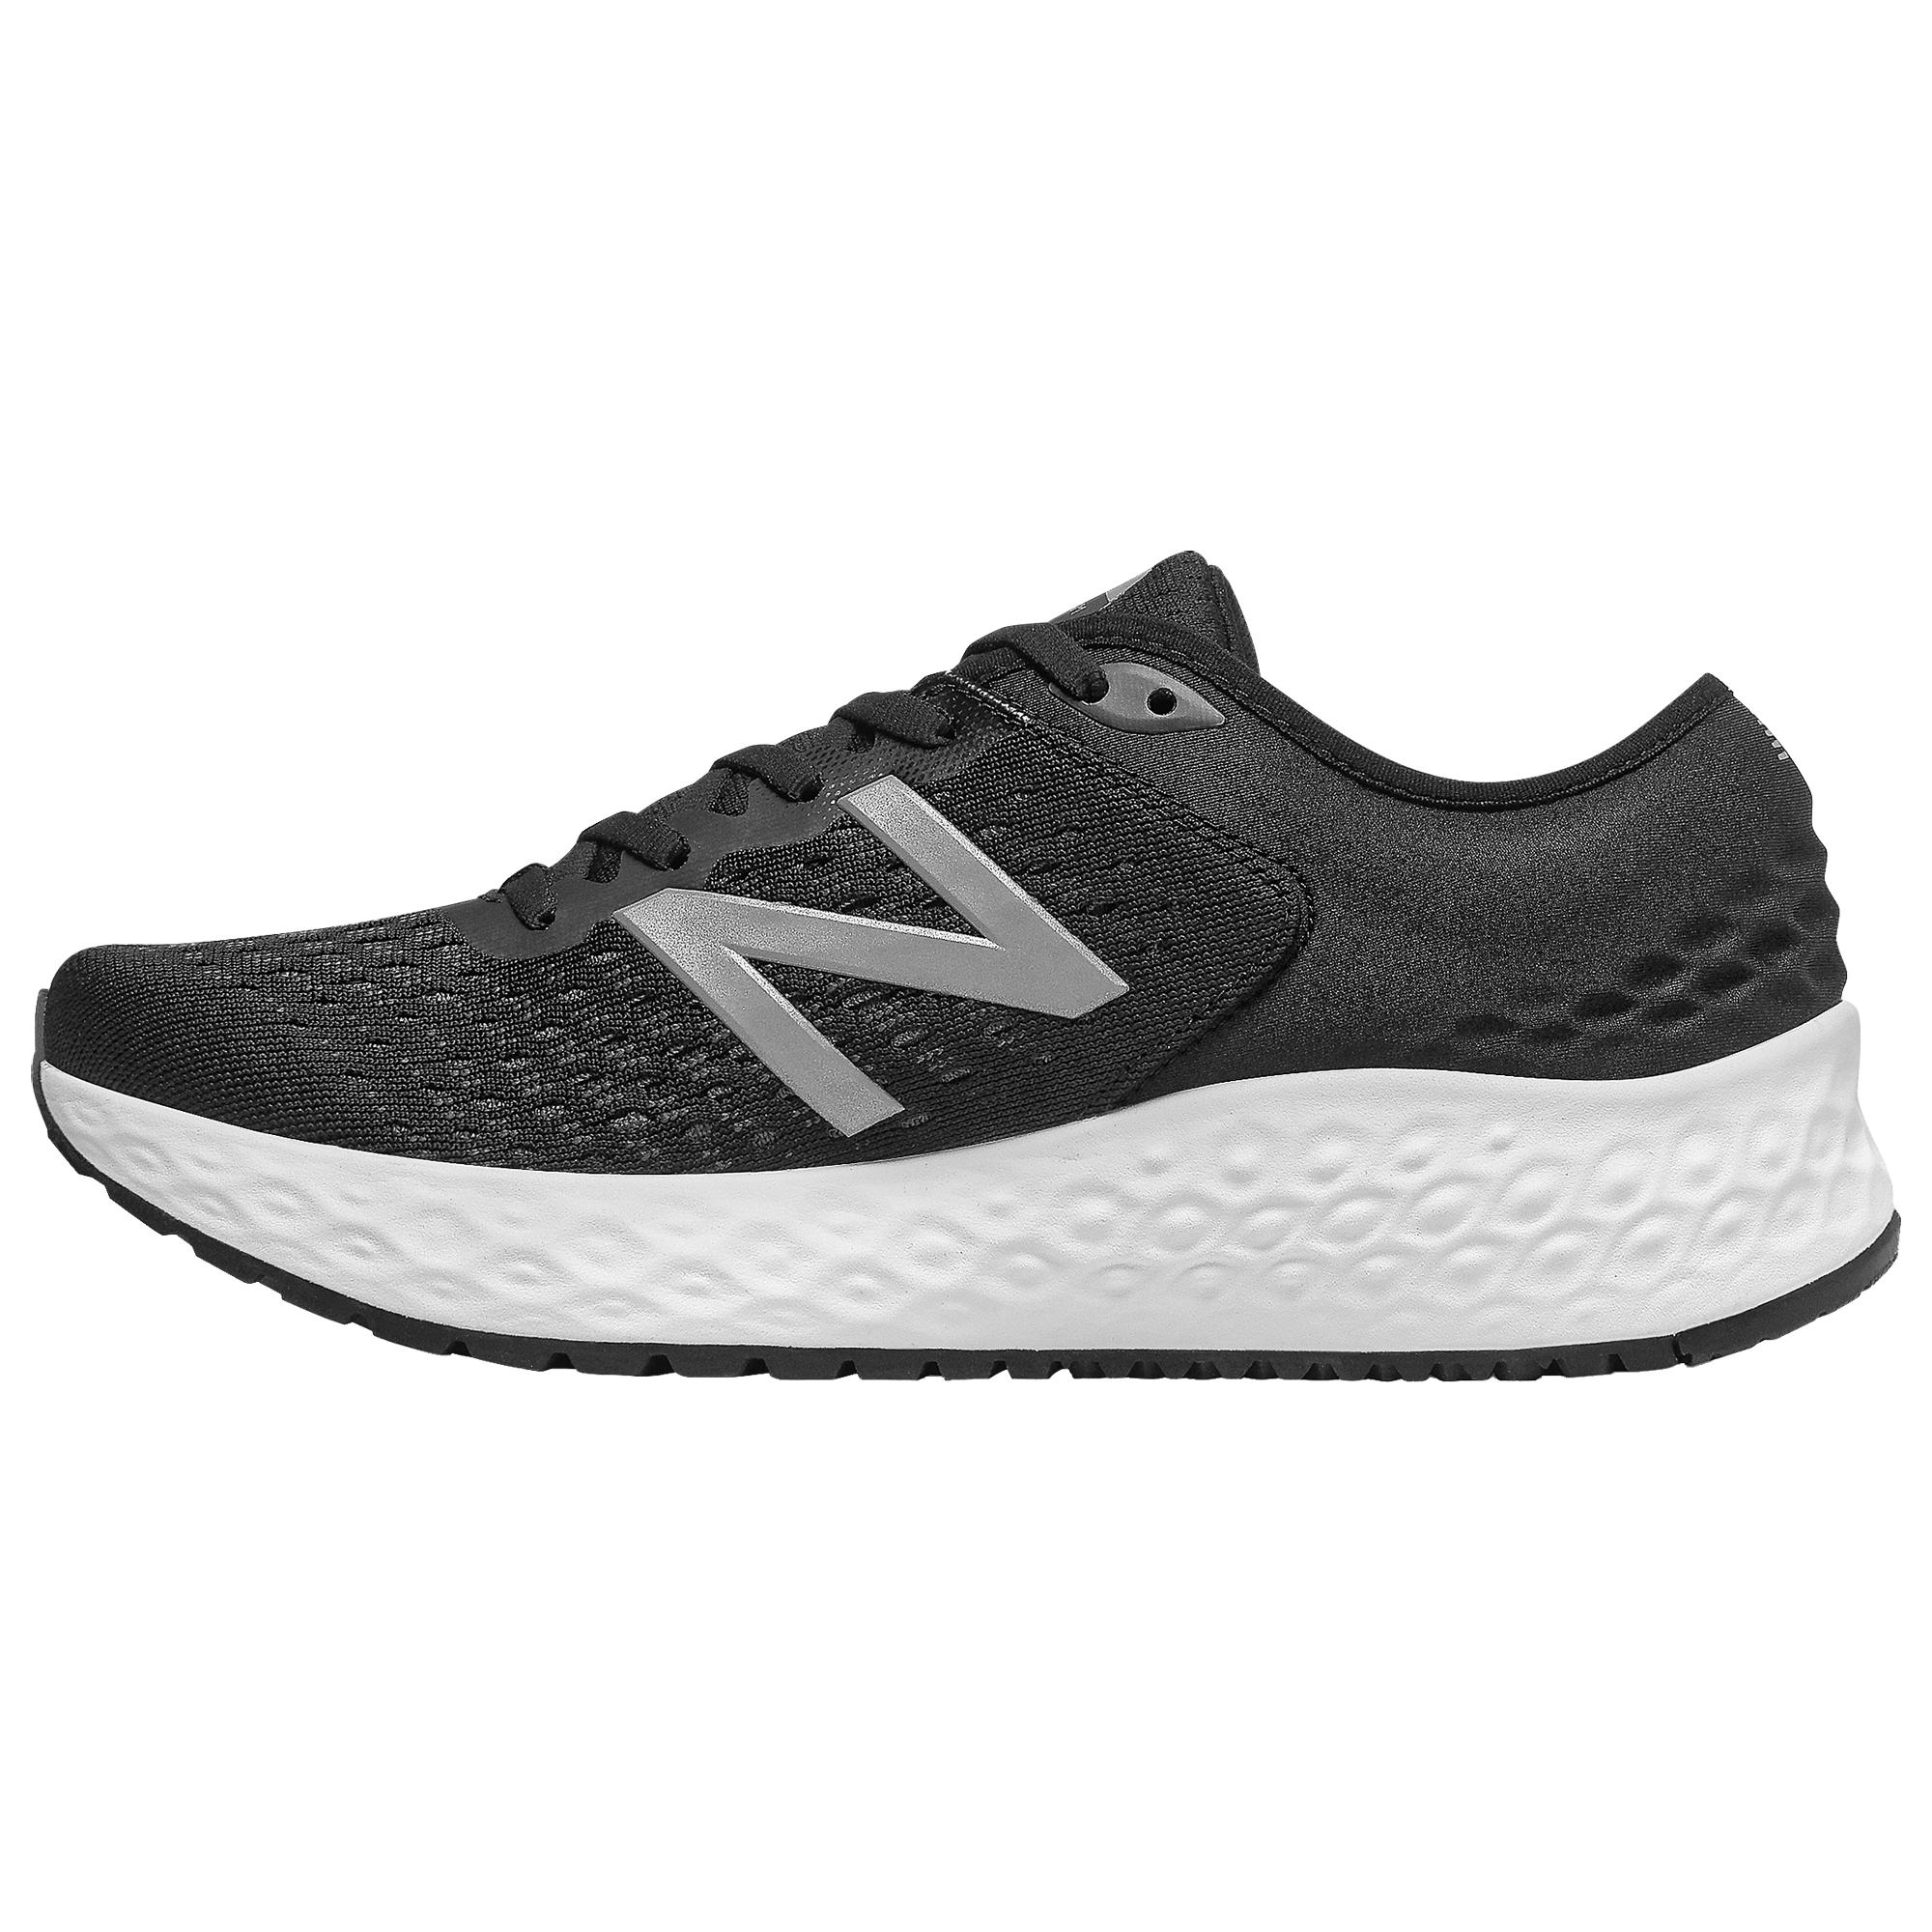 New Balance Fresh Foam 1080 V9 Running Shoes in Black/White (Black) - Lyst